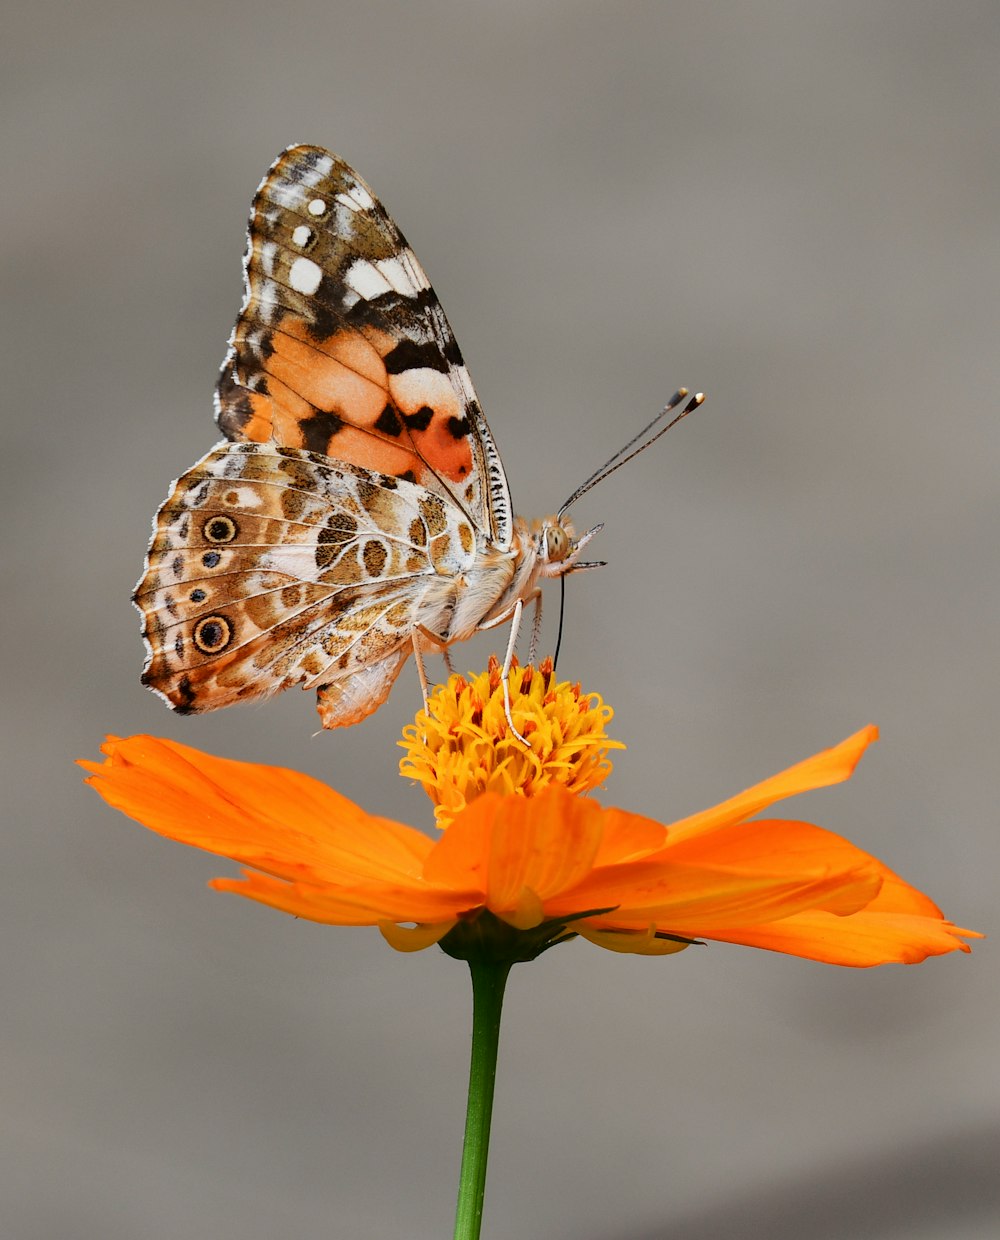 fotografia a fuoco selettiva di farfalla su fiore petalo arancione